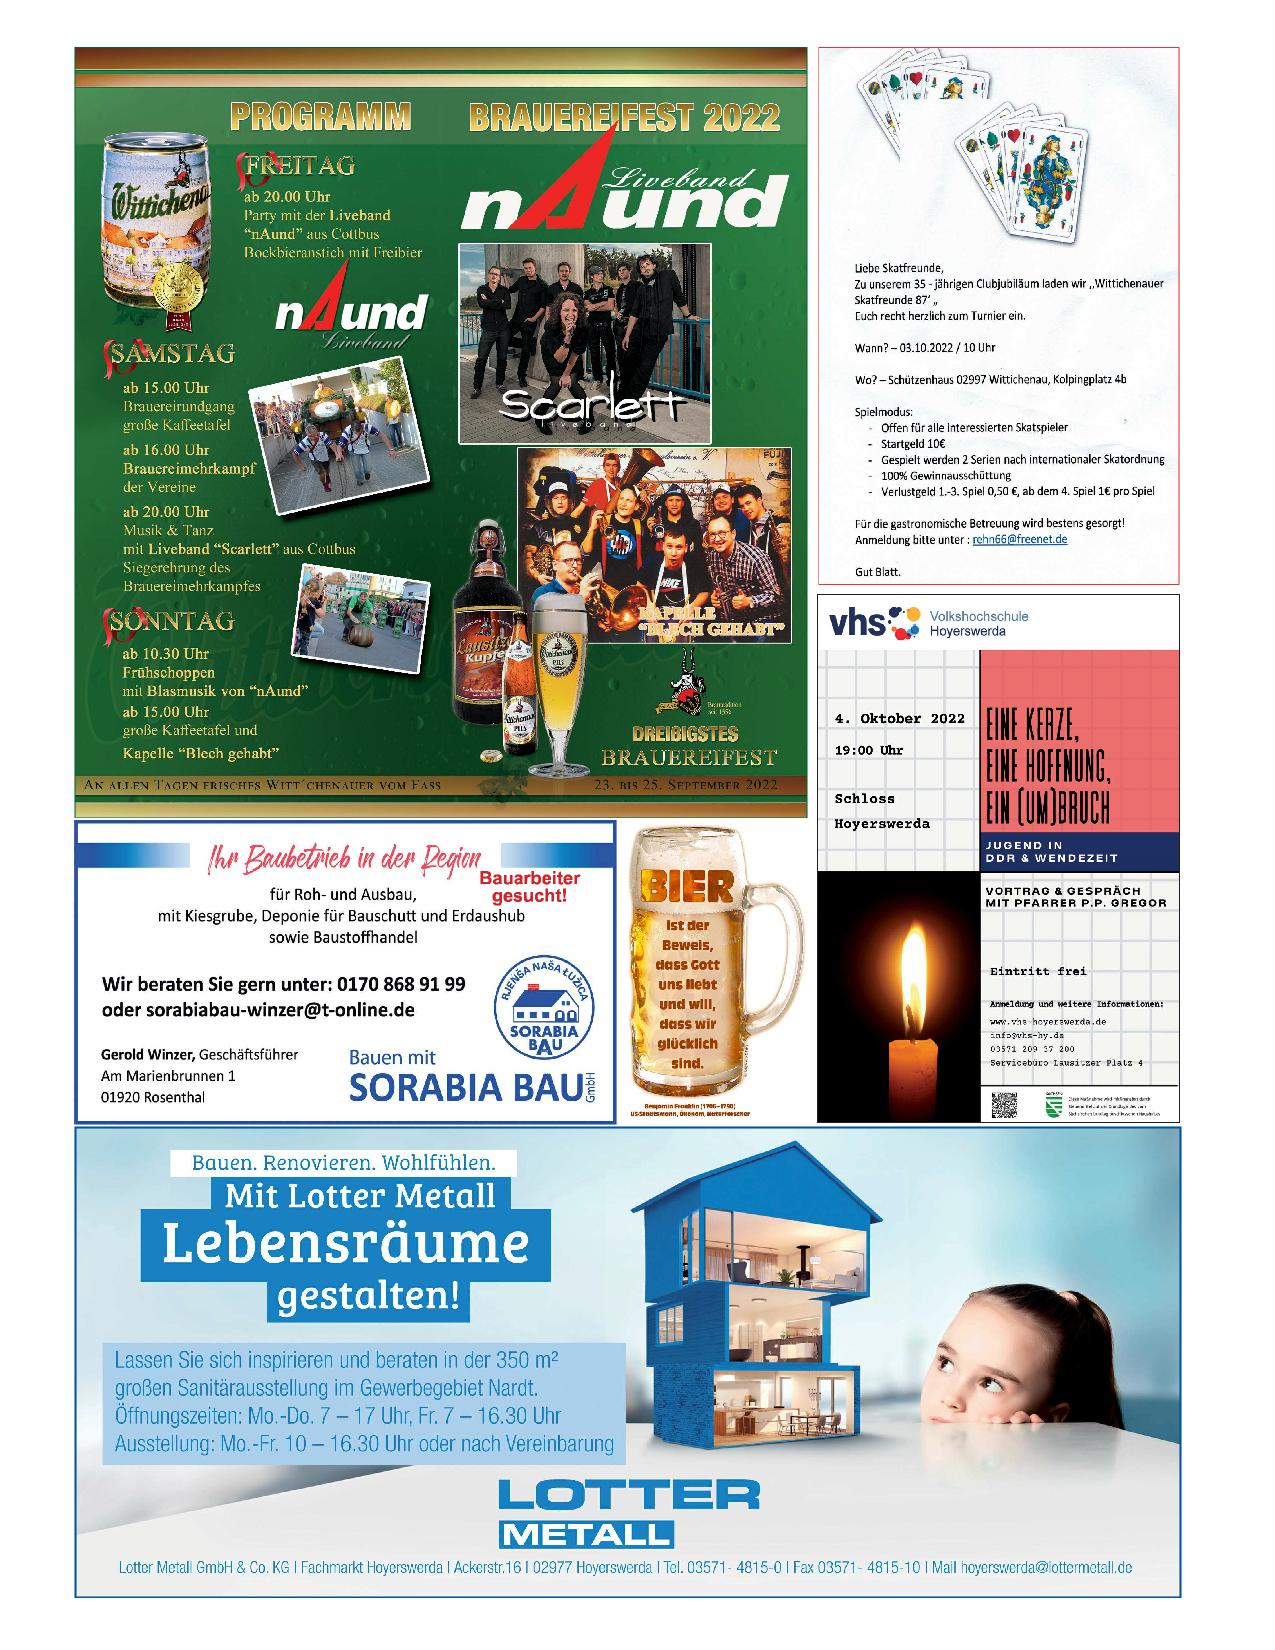 Wochenblatt Nr. 16 - 2022